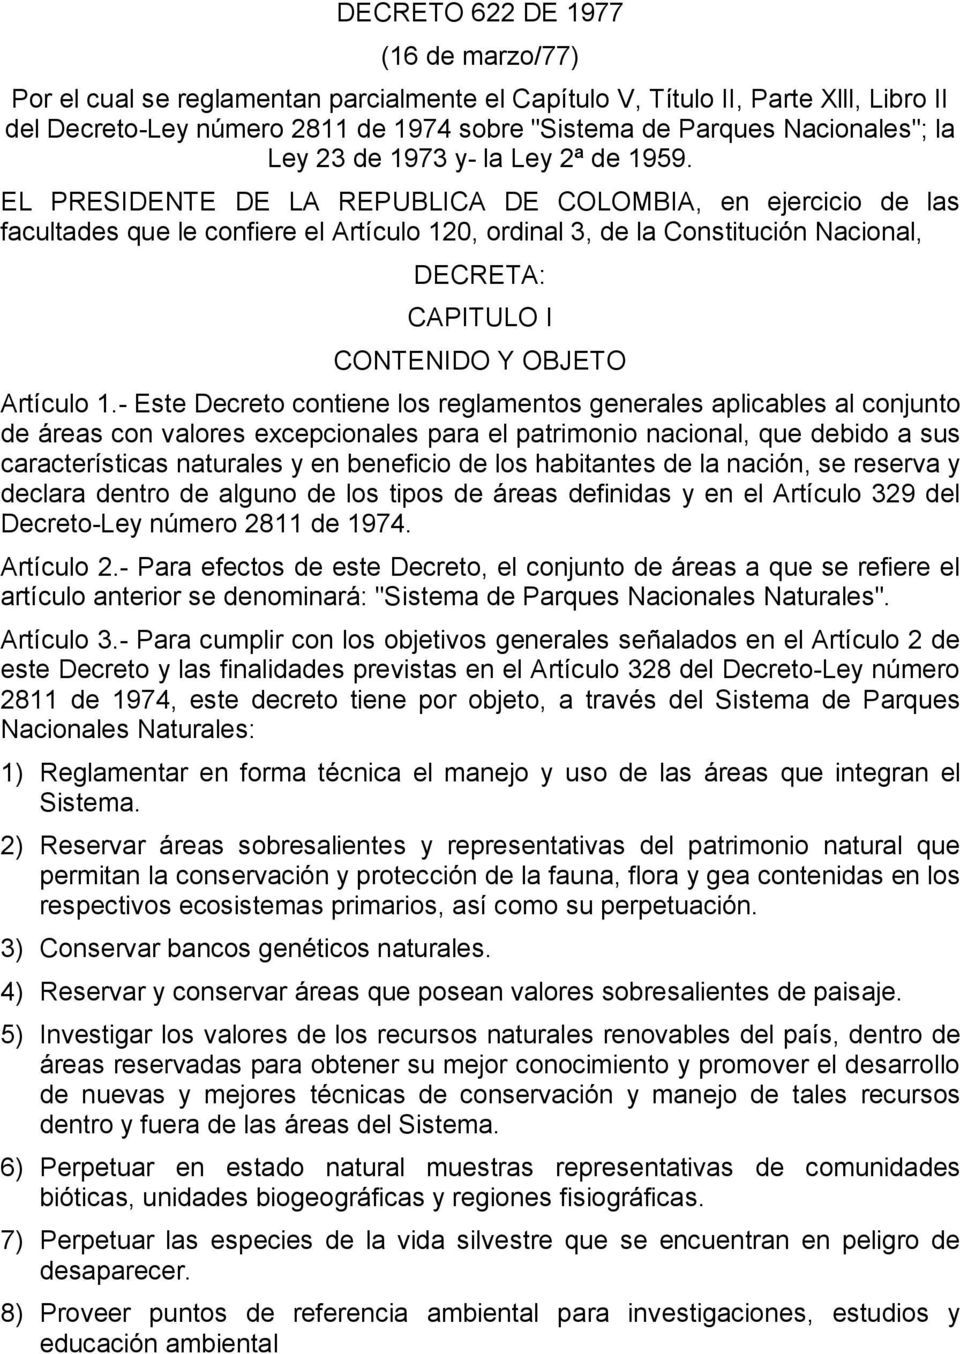 EL PRESIDENTE DE LA REPUBLICA DE COLOMBIA, en ejercicio de las facultades que le confiere el Artículo 120, ordinal 3, de la Constitución Nacional, DECRETA: CAPITULO I CONTENIDO Y OBJETO Artículo 1.